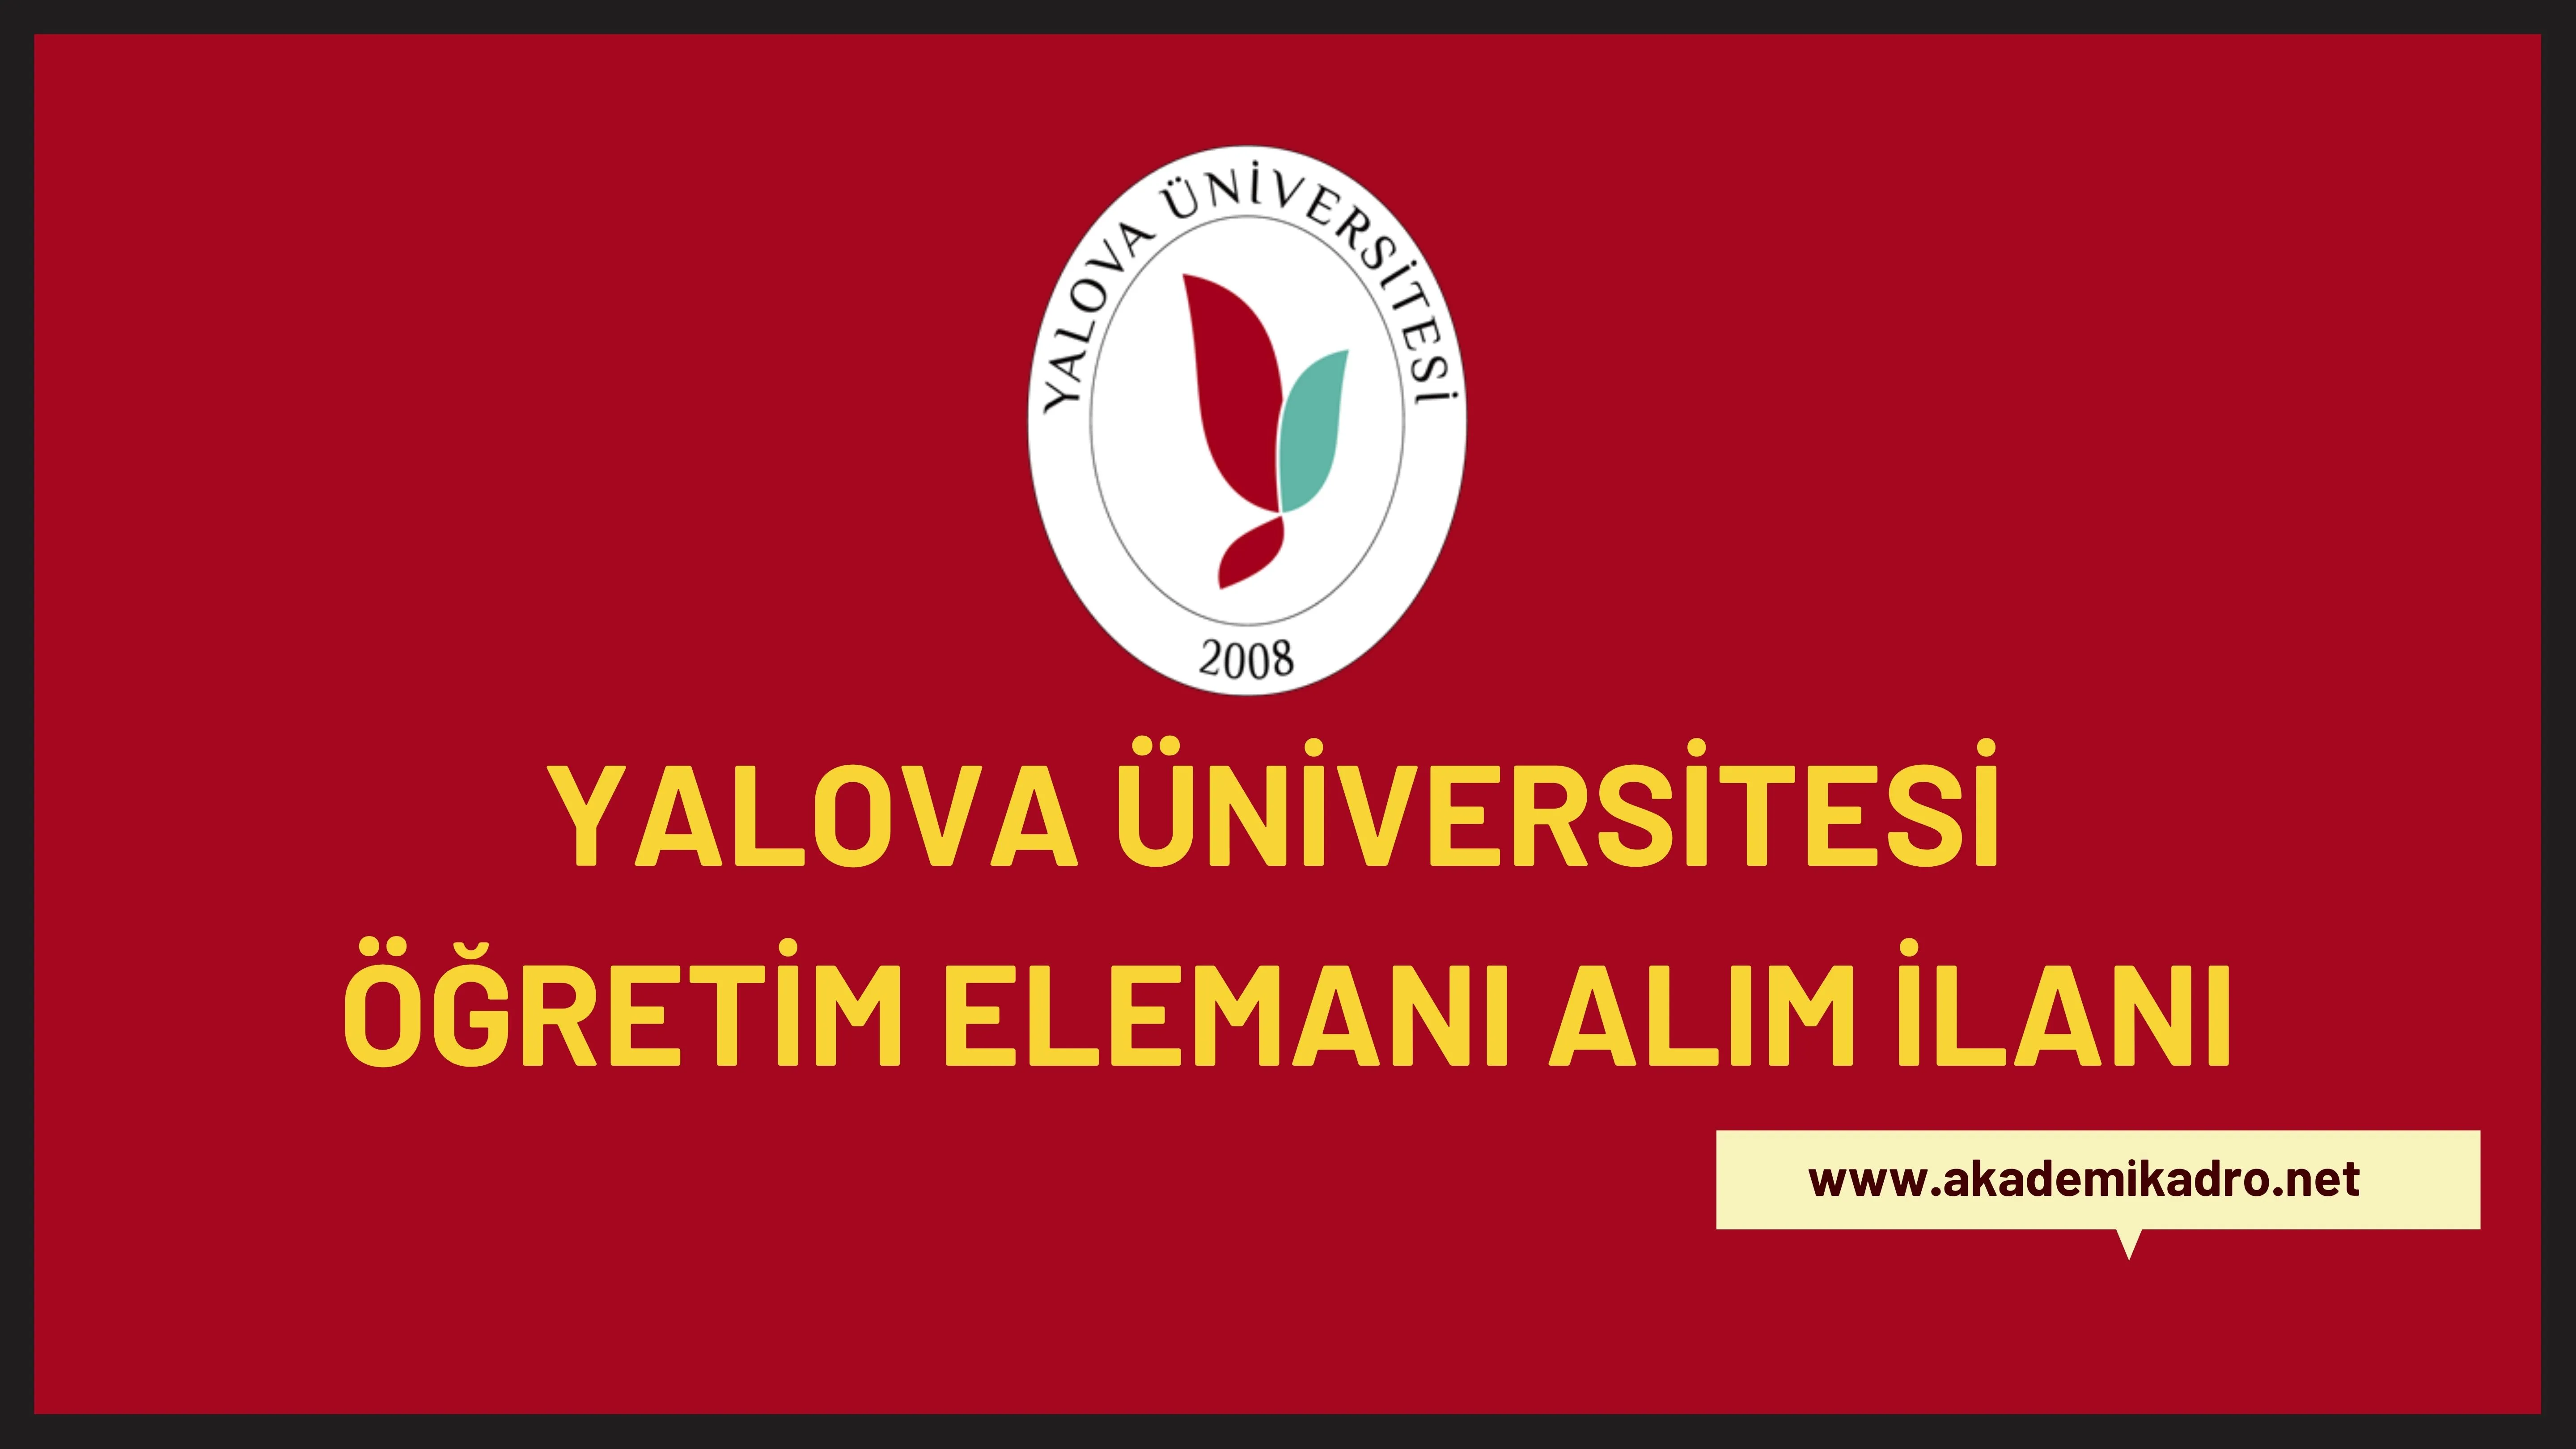 Yalova Üniversitesi 26 öğretim üyesi, 11 Araştırma görevlisi ve 6 Öğretim görevlisi alacaktır.